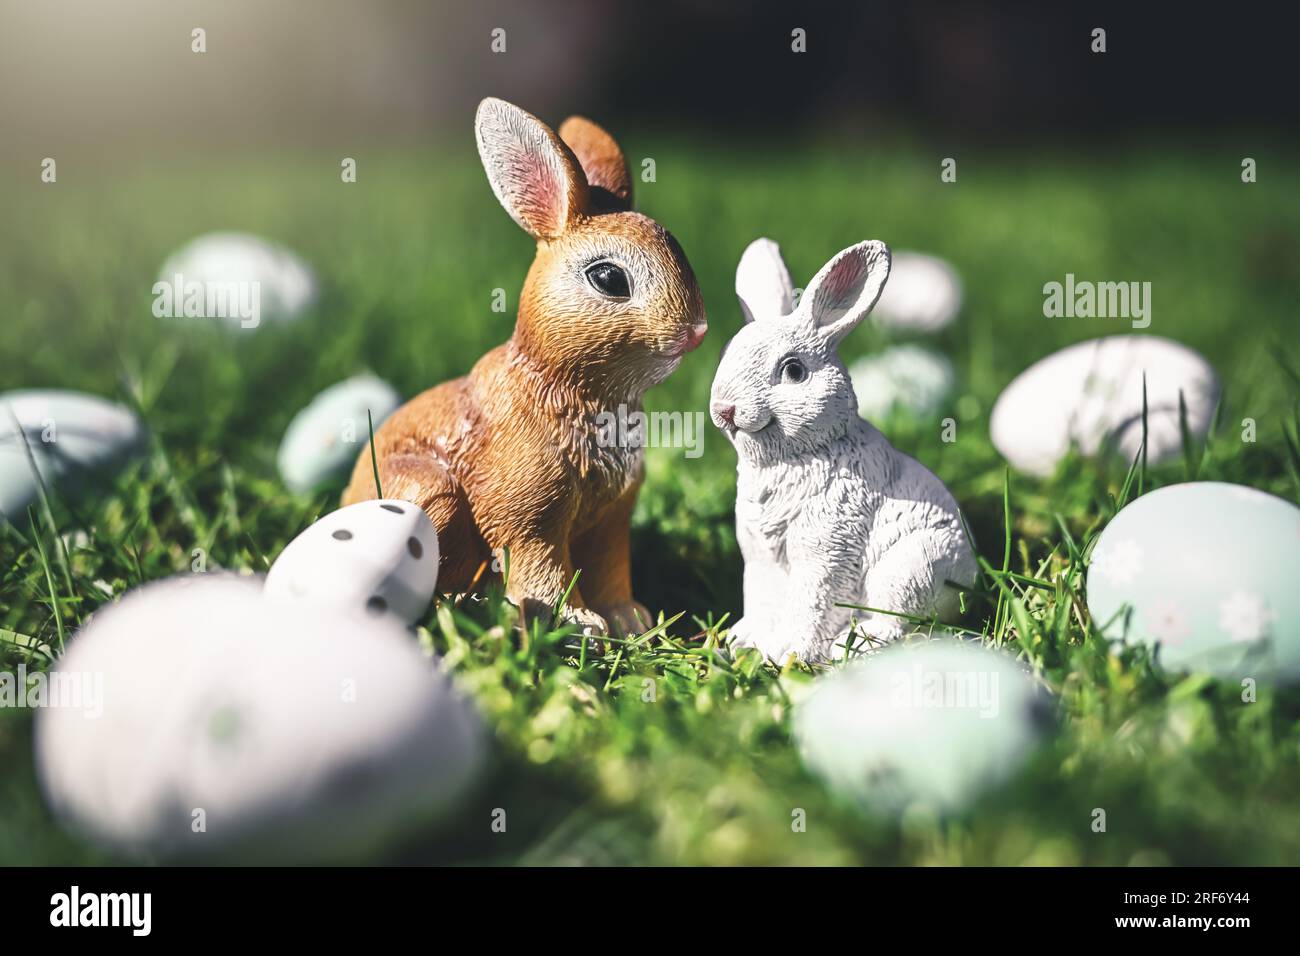 Osterhasenfiguren mit Ostereiern auf dem Rasen Stock Photo